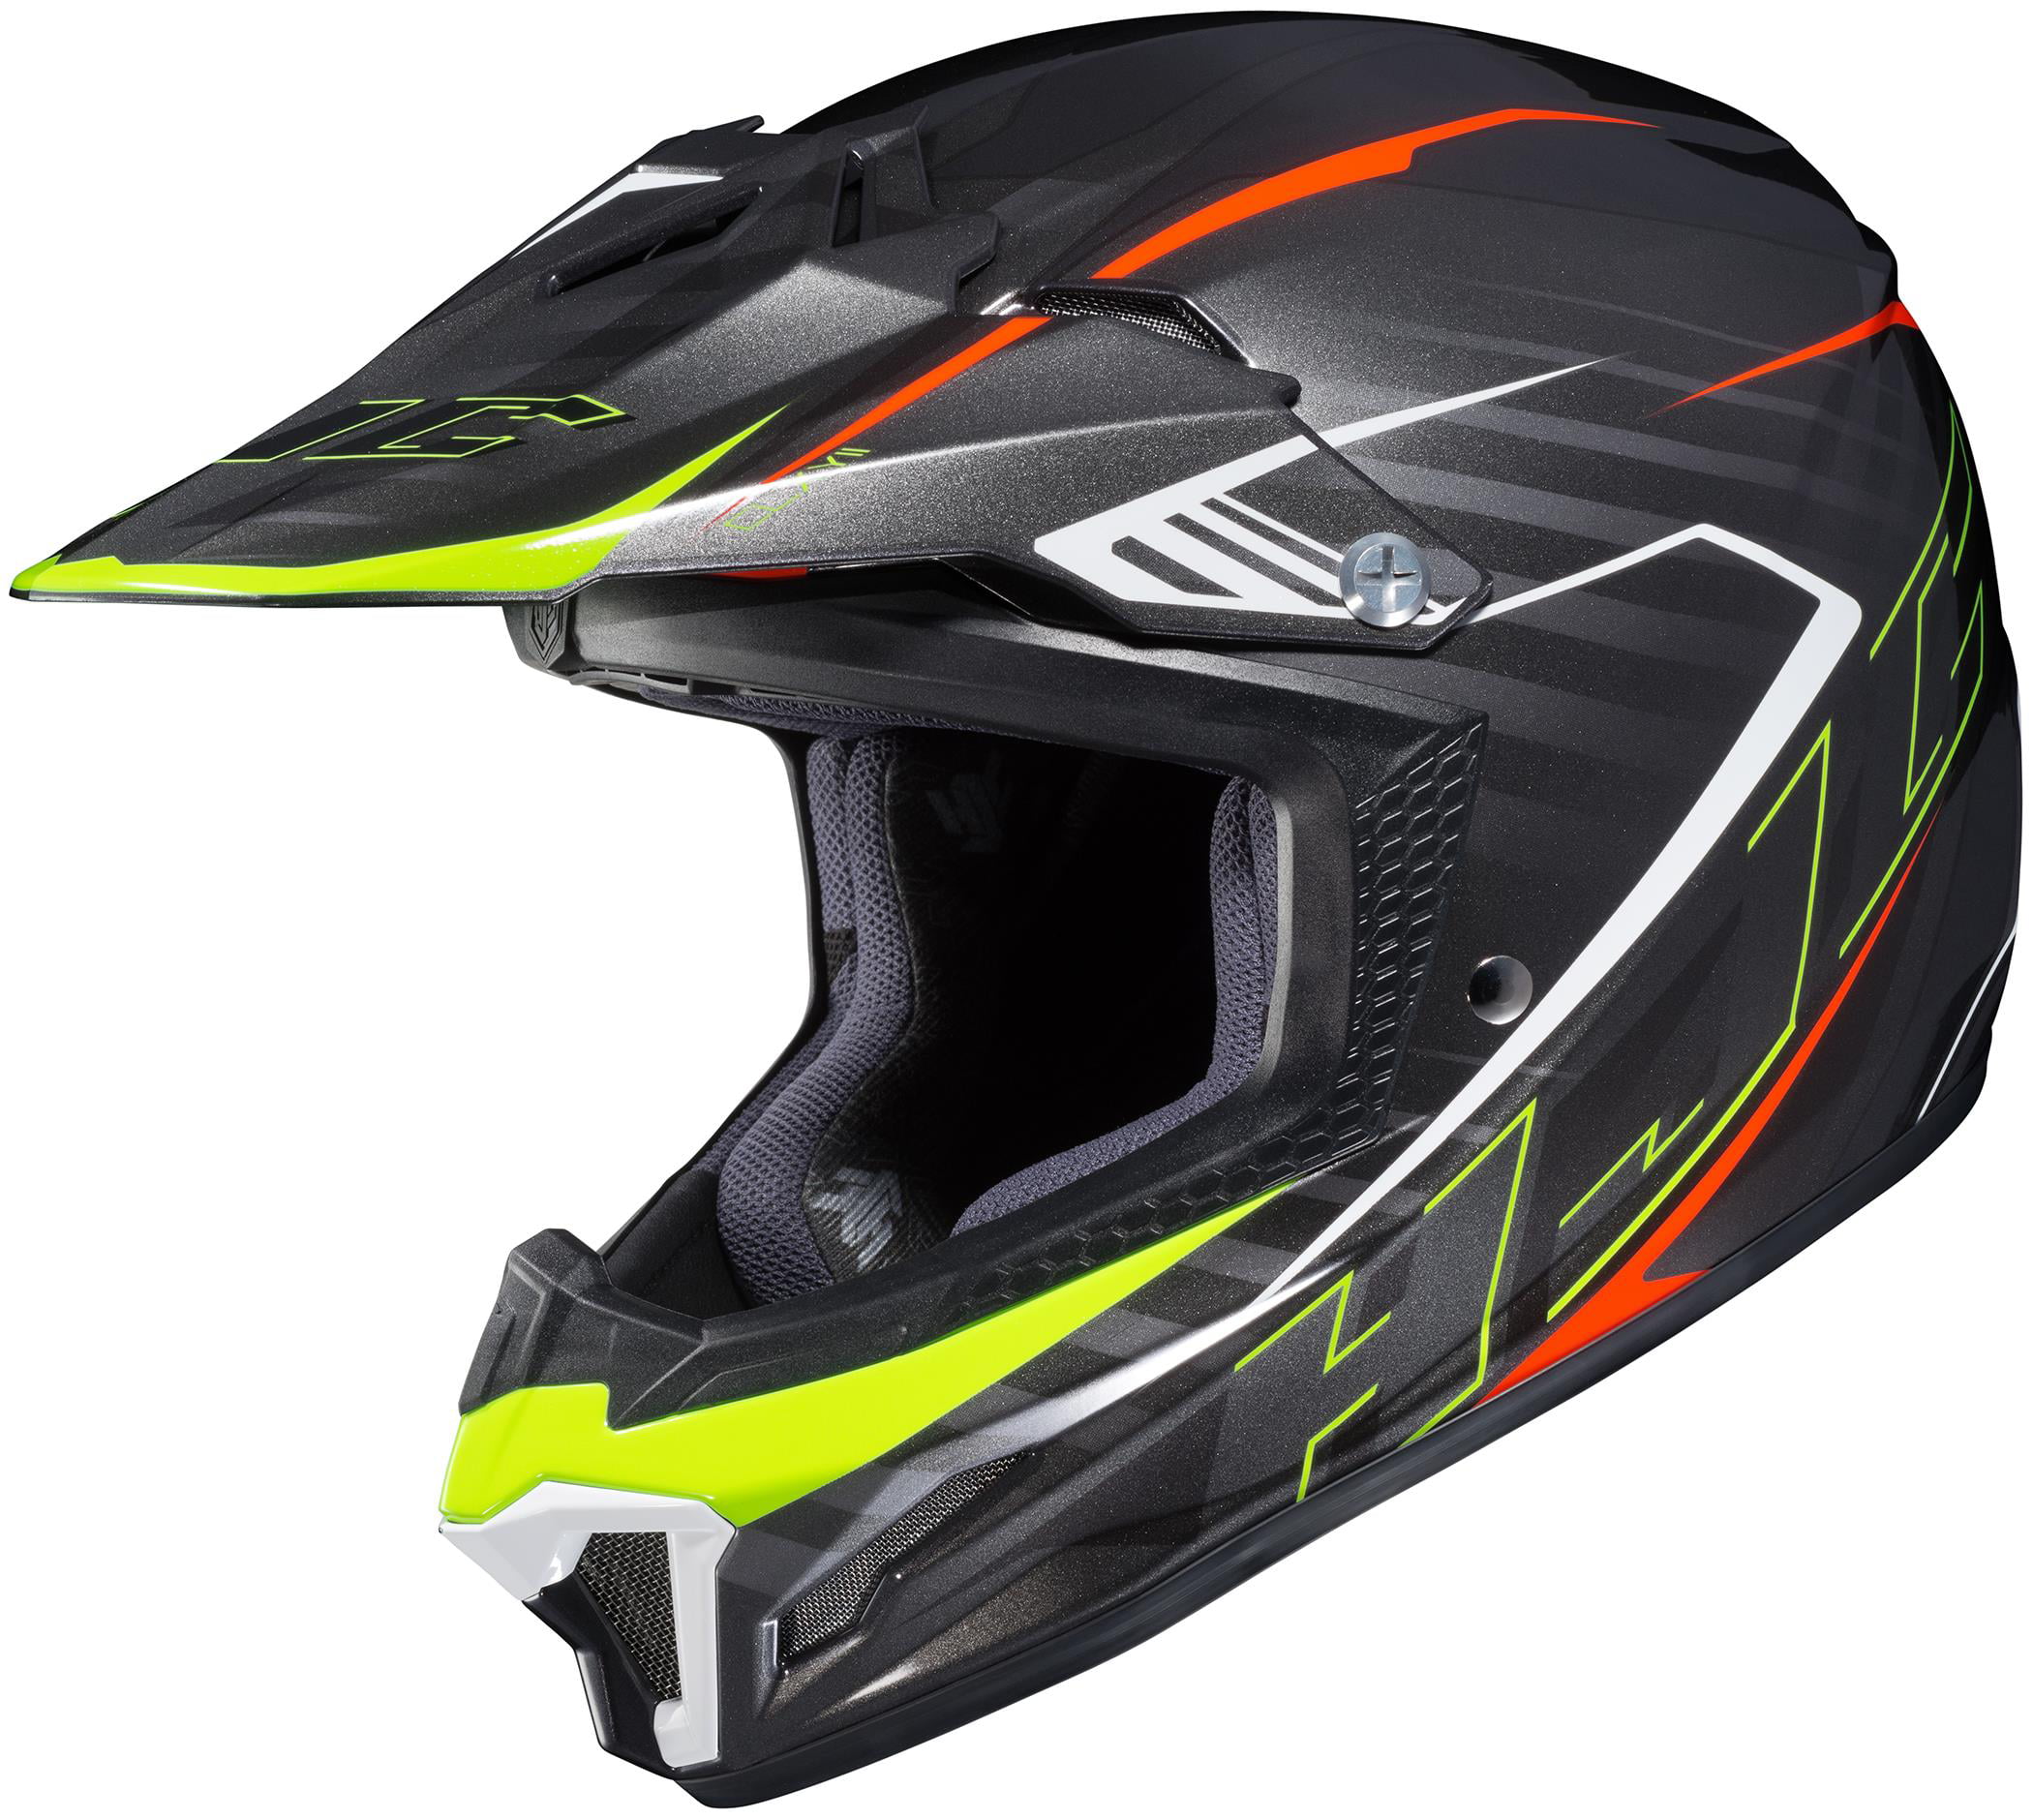 CL-XY II Batman Dirt DOT Off Road HJC Boys Youth Motocross Racing Bike Helmets 